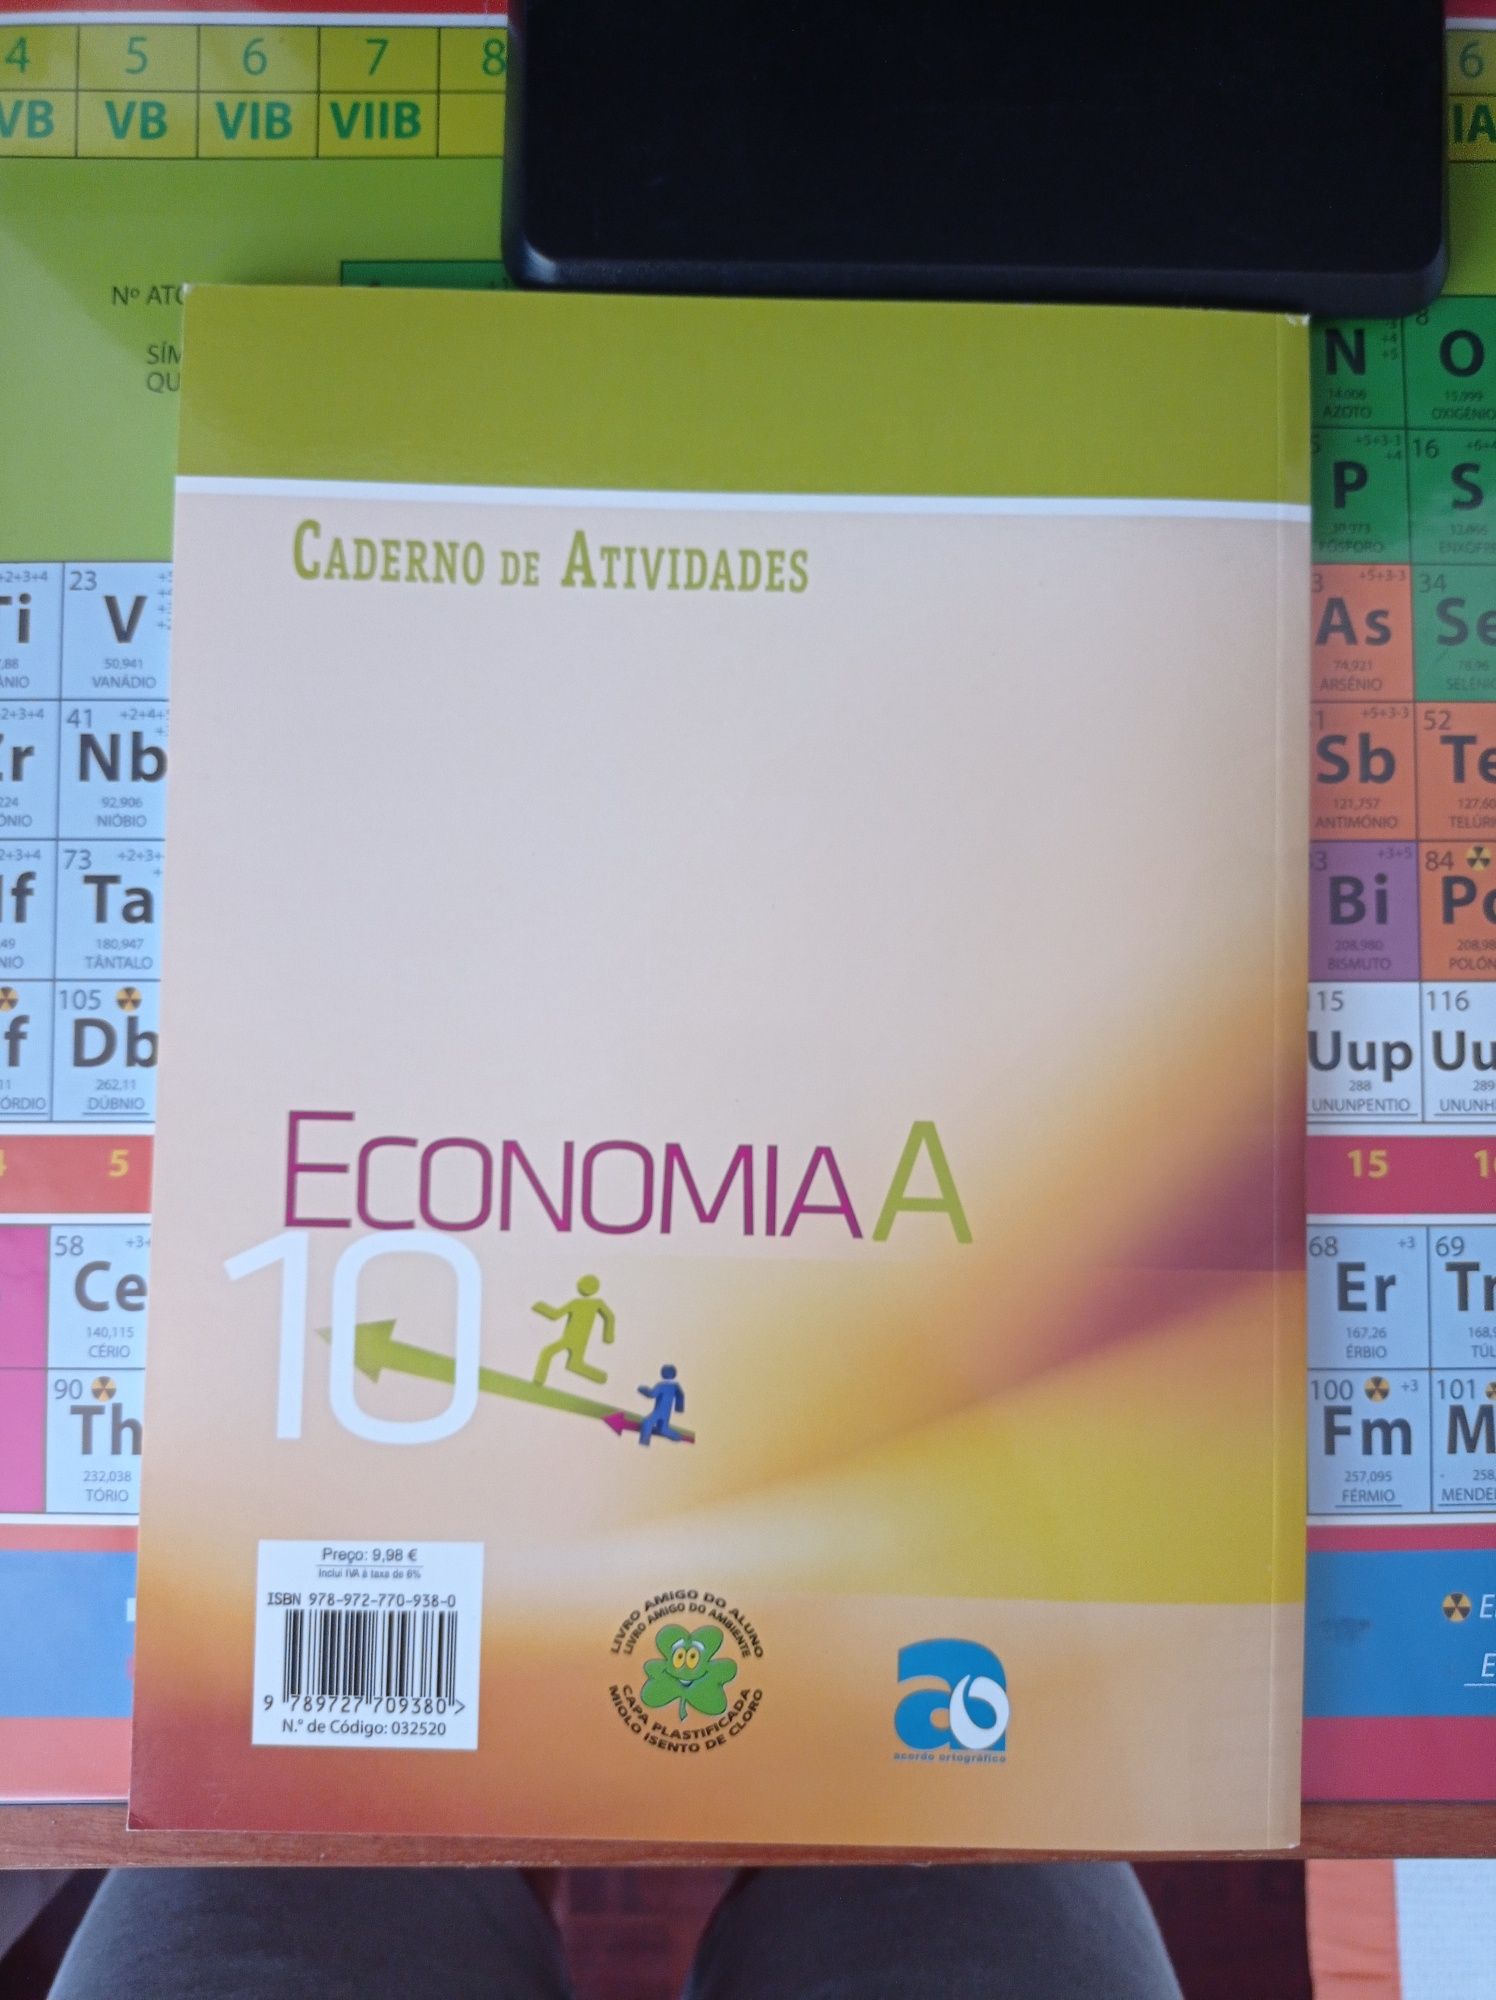 Caderno de atividades de Economia A de 10°ano da Plátano Editora